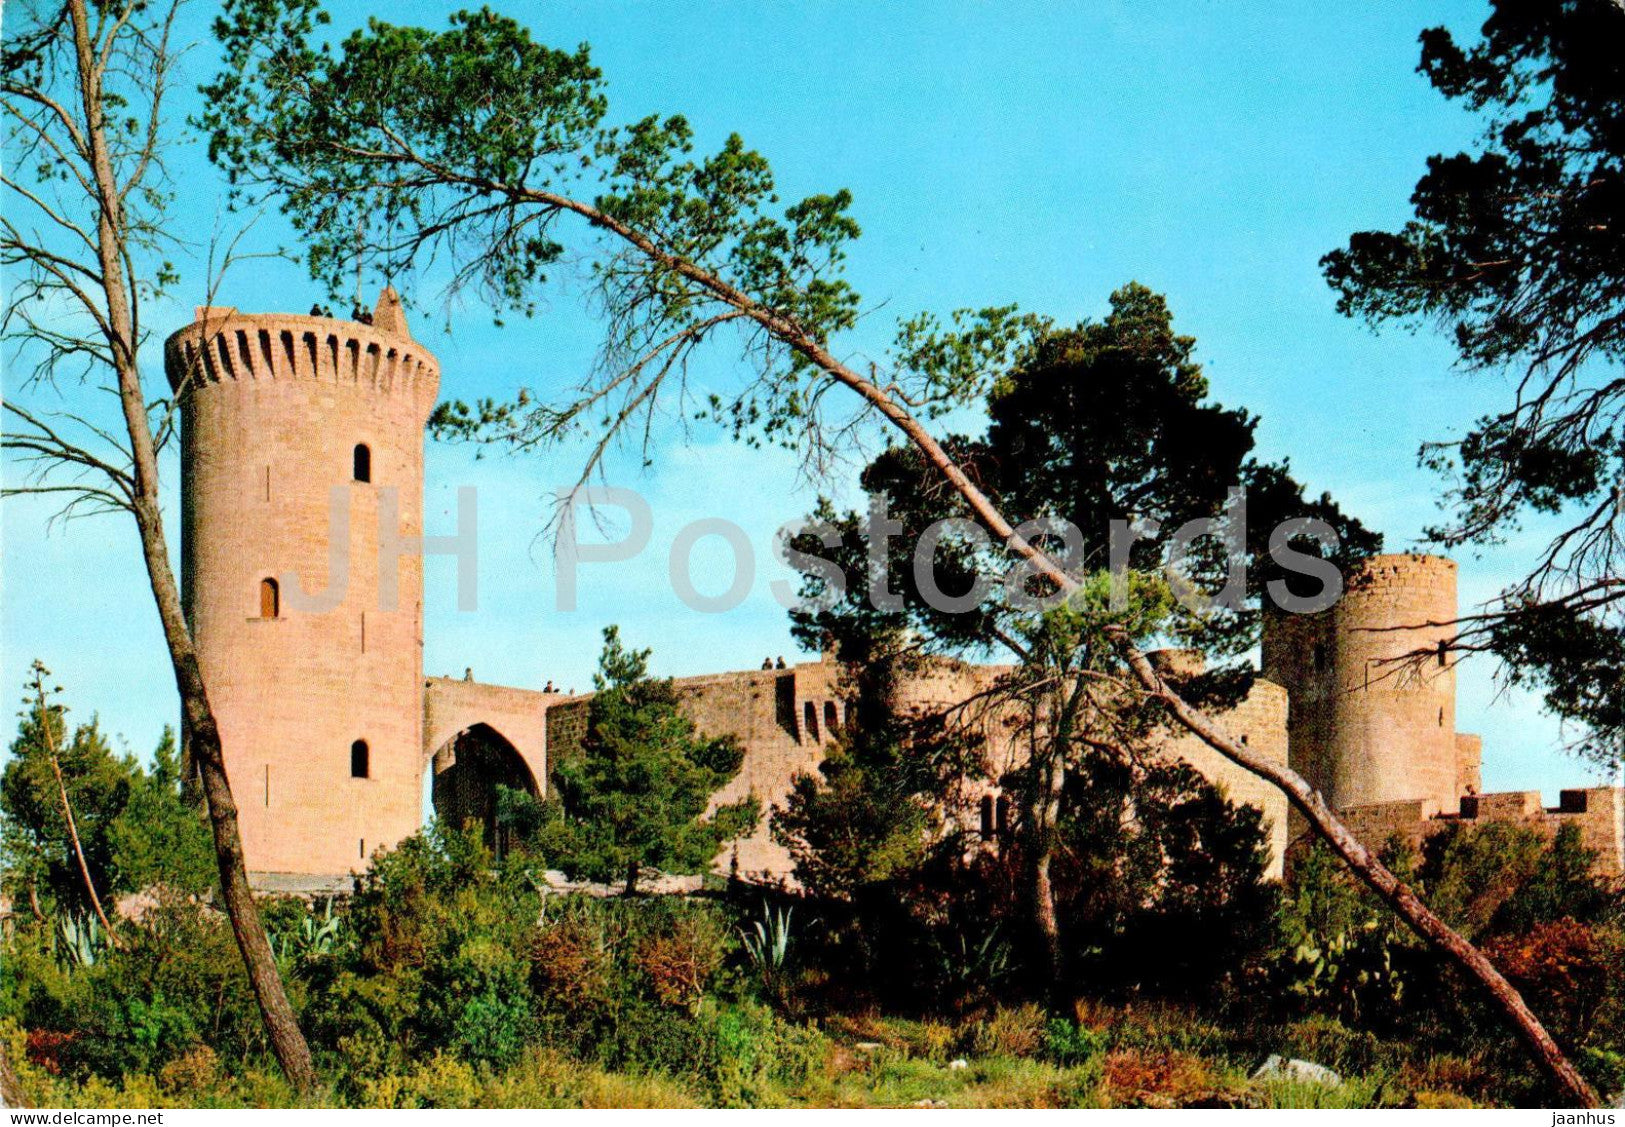 Mallorca - Palma - Castillo de Bellver - Bellver Castle - 77 - Spain - used - JH Postcards